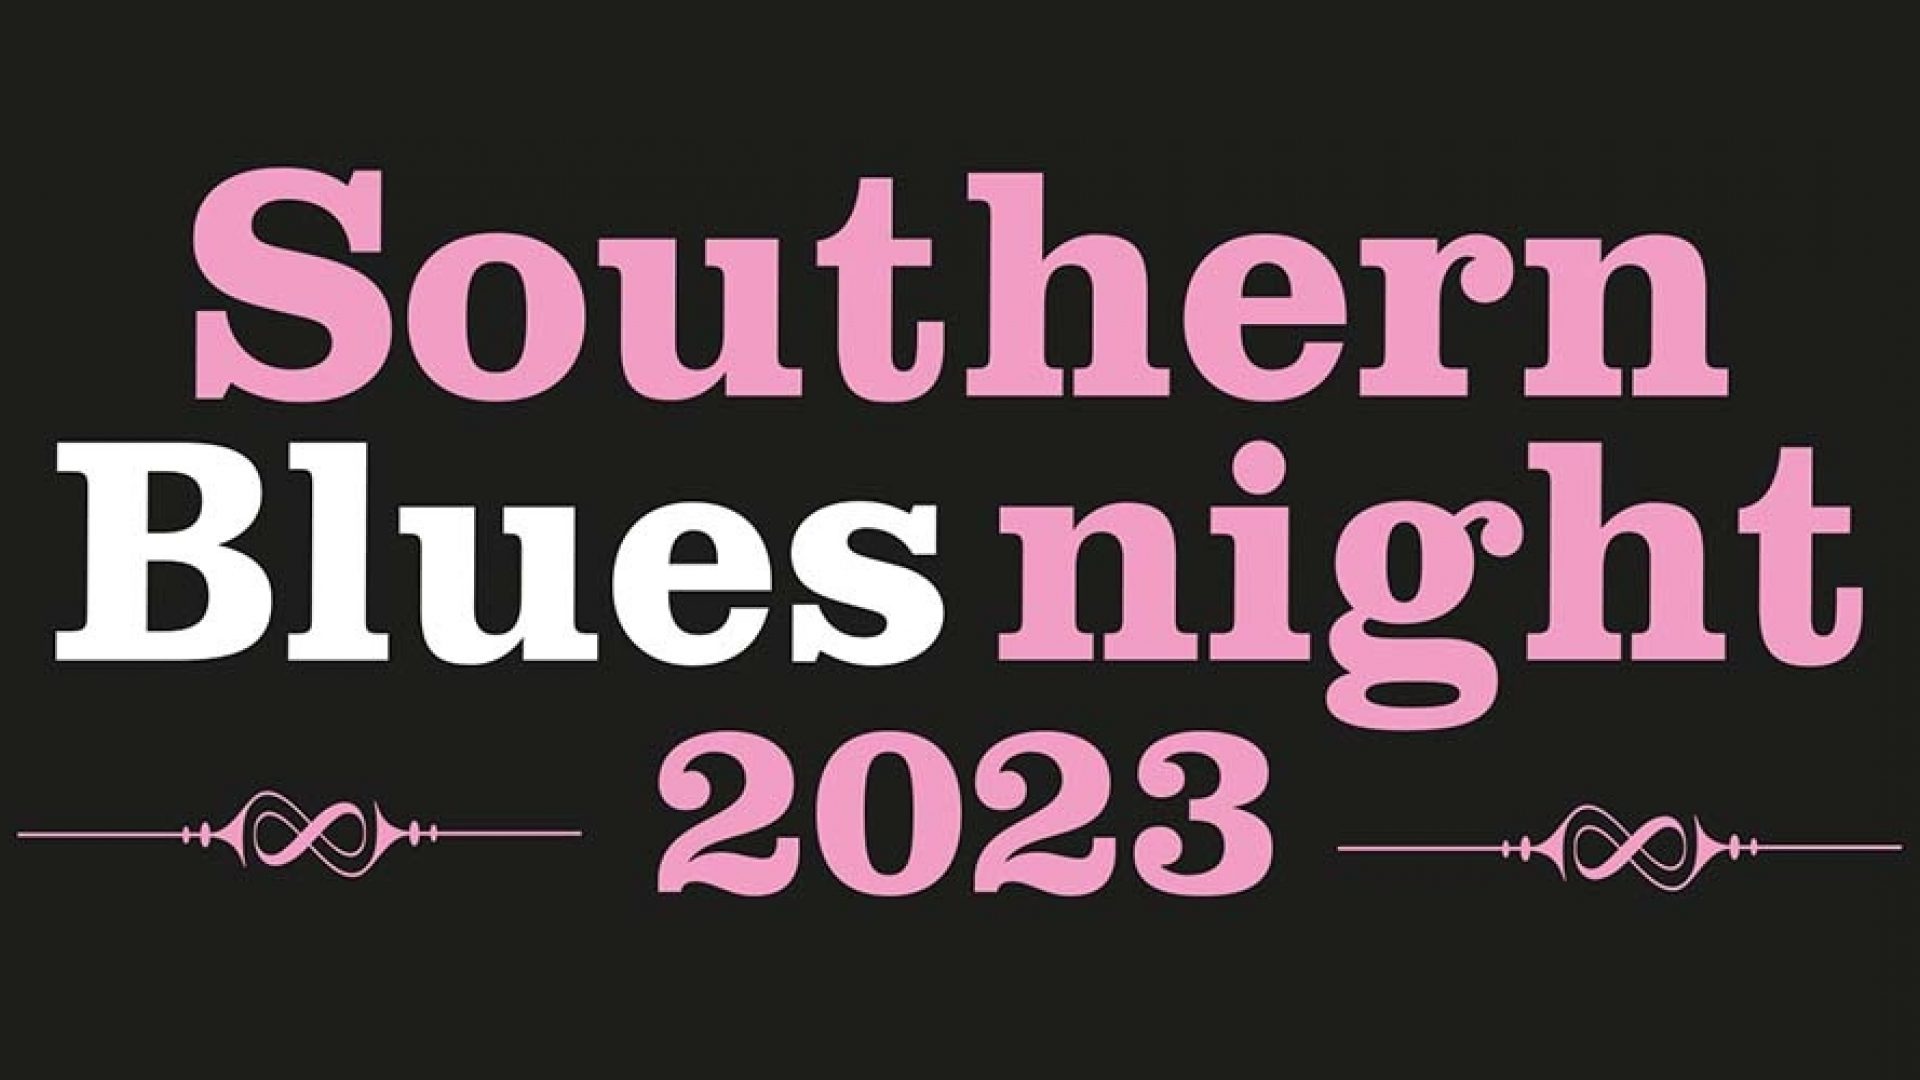 25 years Southern Bluesnight